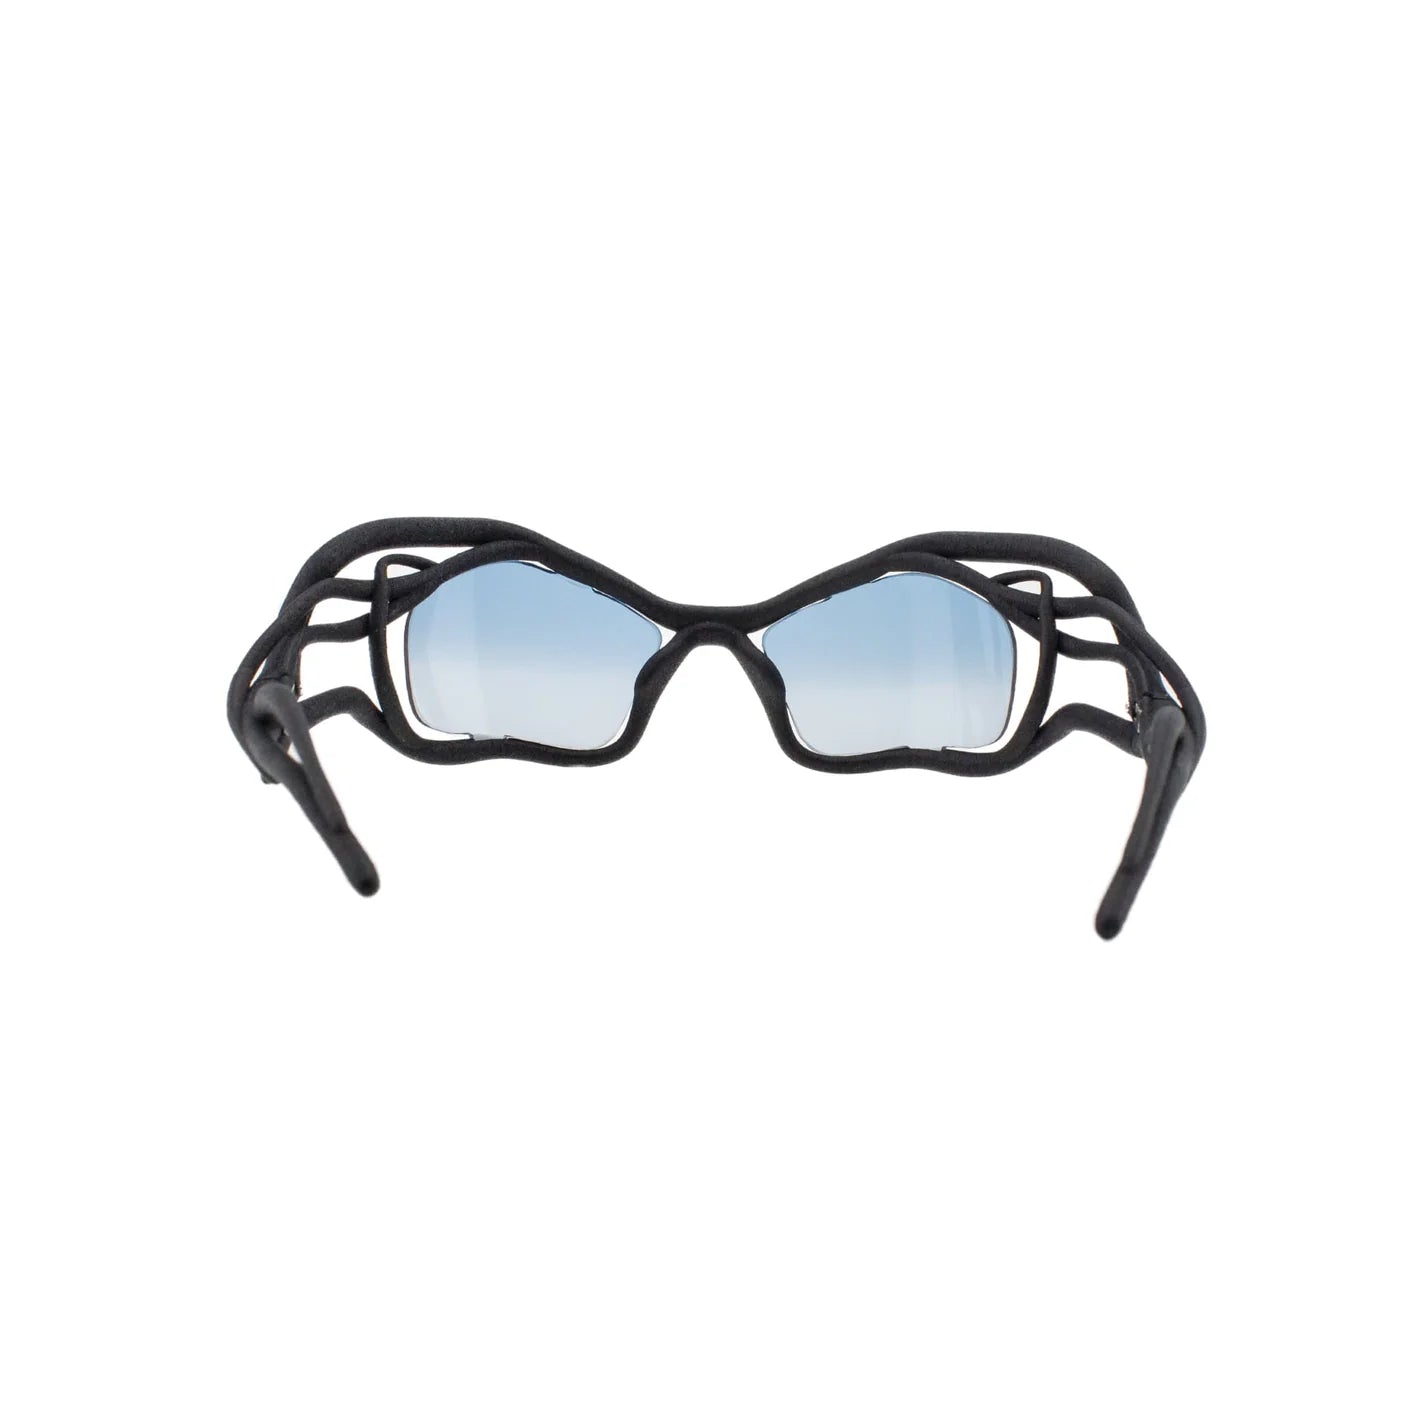 Blue NFT Sunglasses